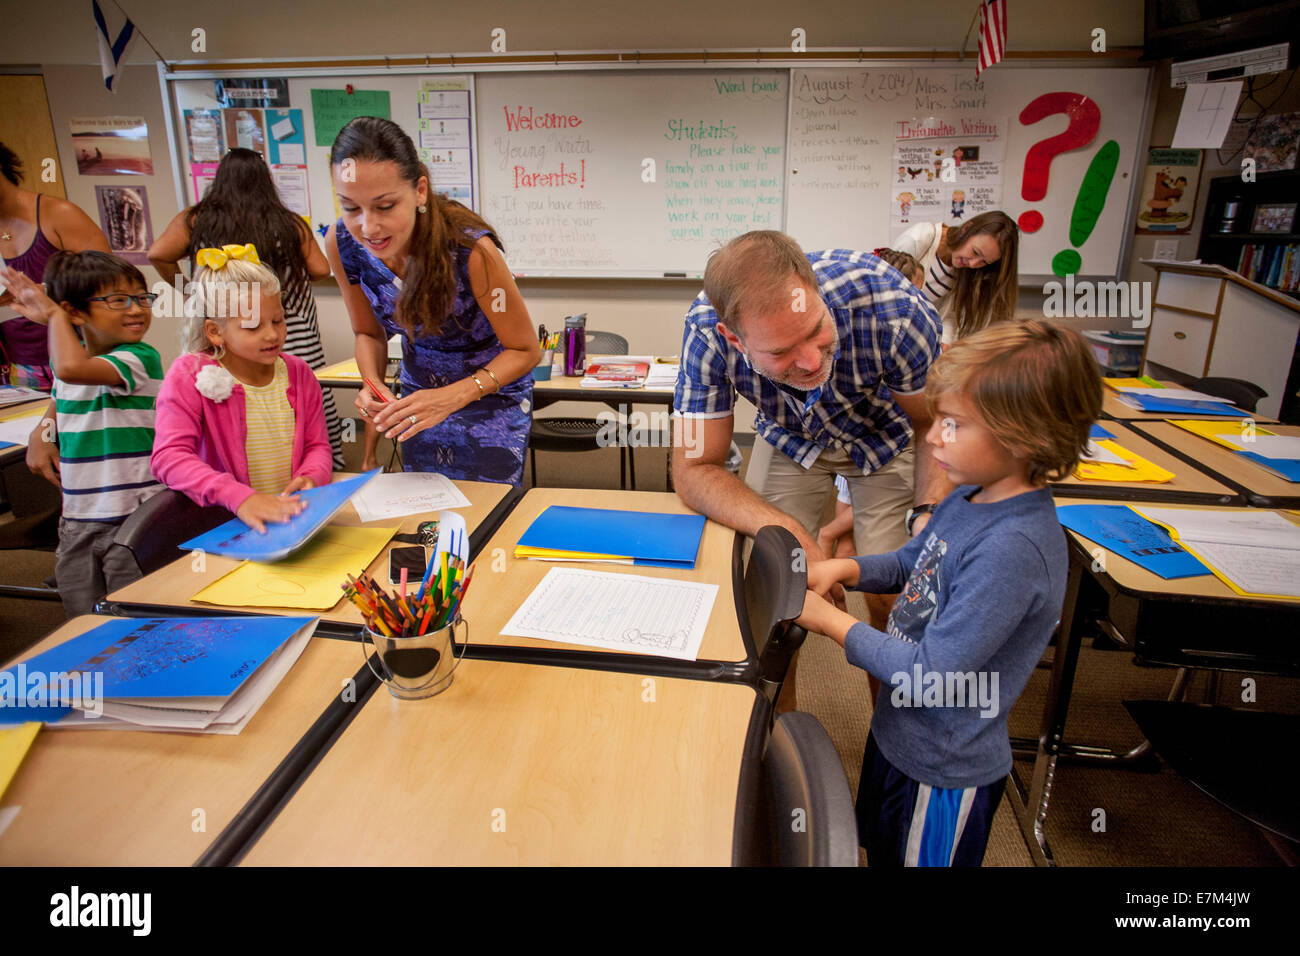 Eltern sehen ihre Kinder Klassenarbeiten am Eltern-Tag an einer Grundschule in Irvine, CA. Hinweis auf Tafel willkommen. Stockfoto